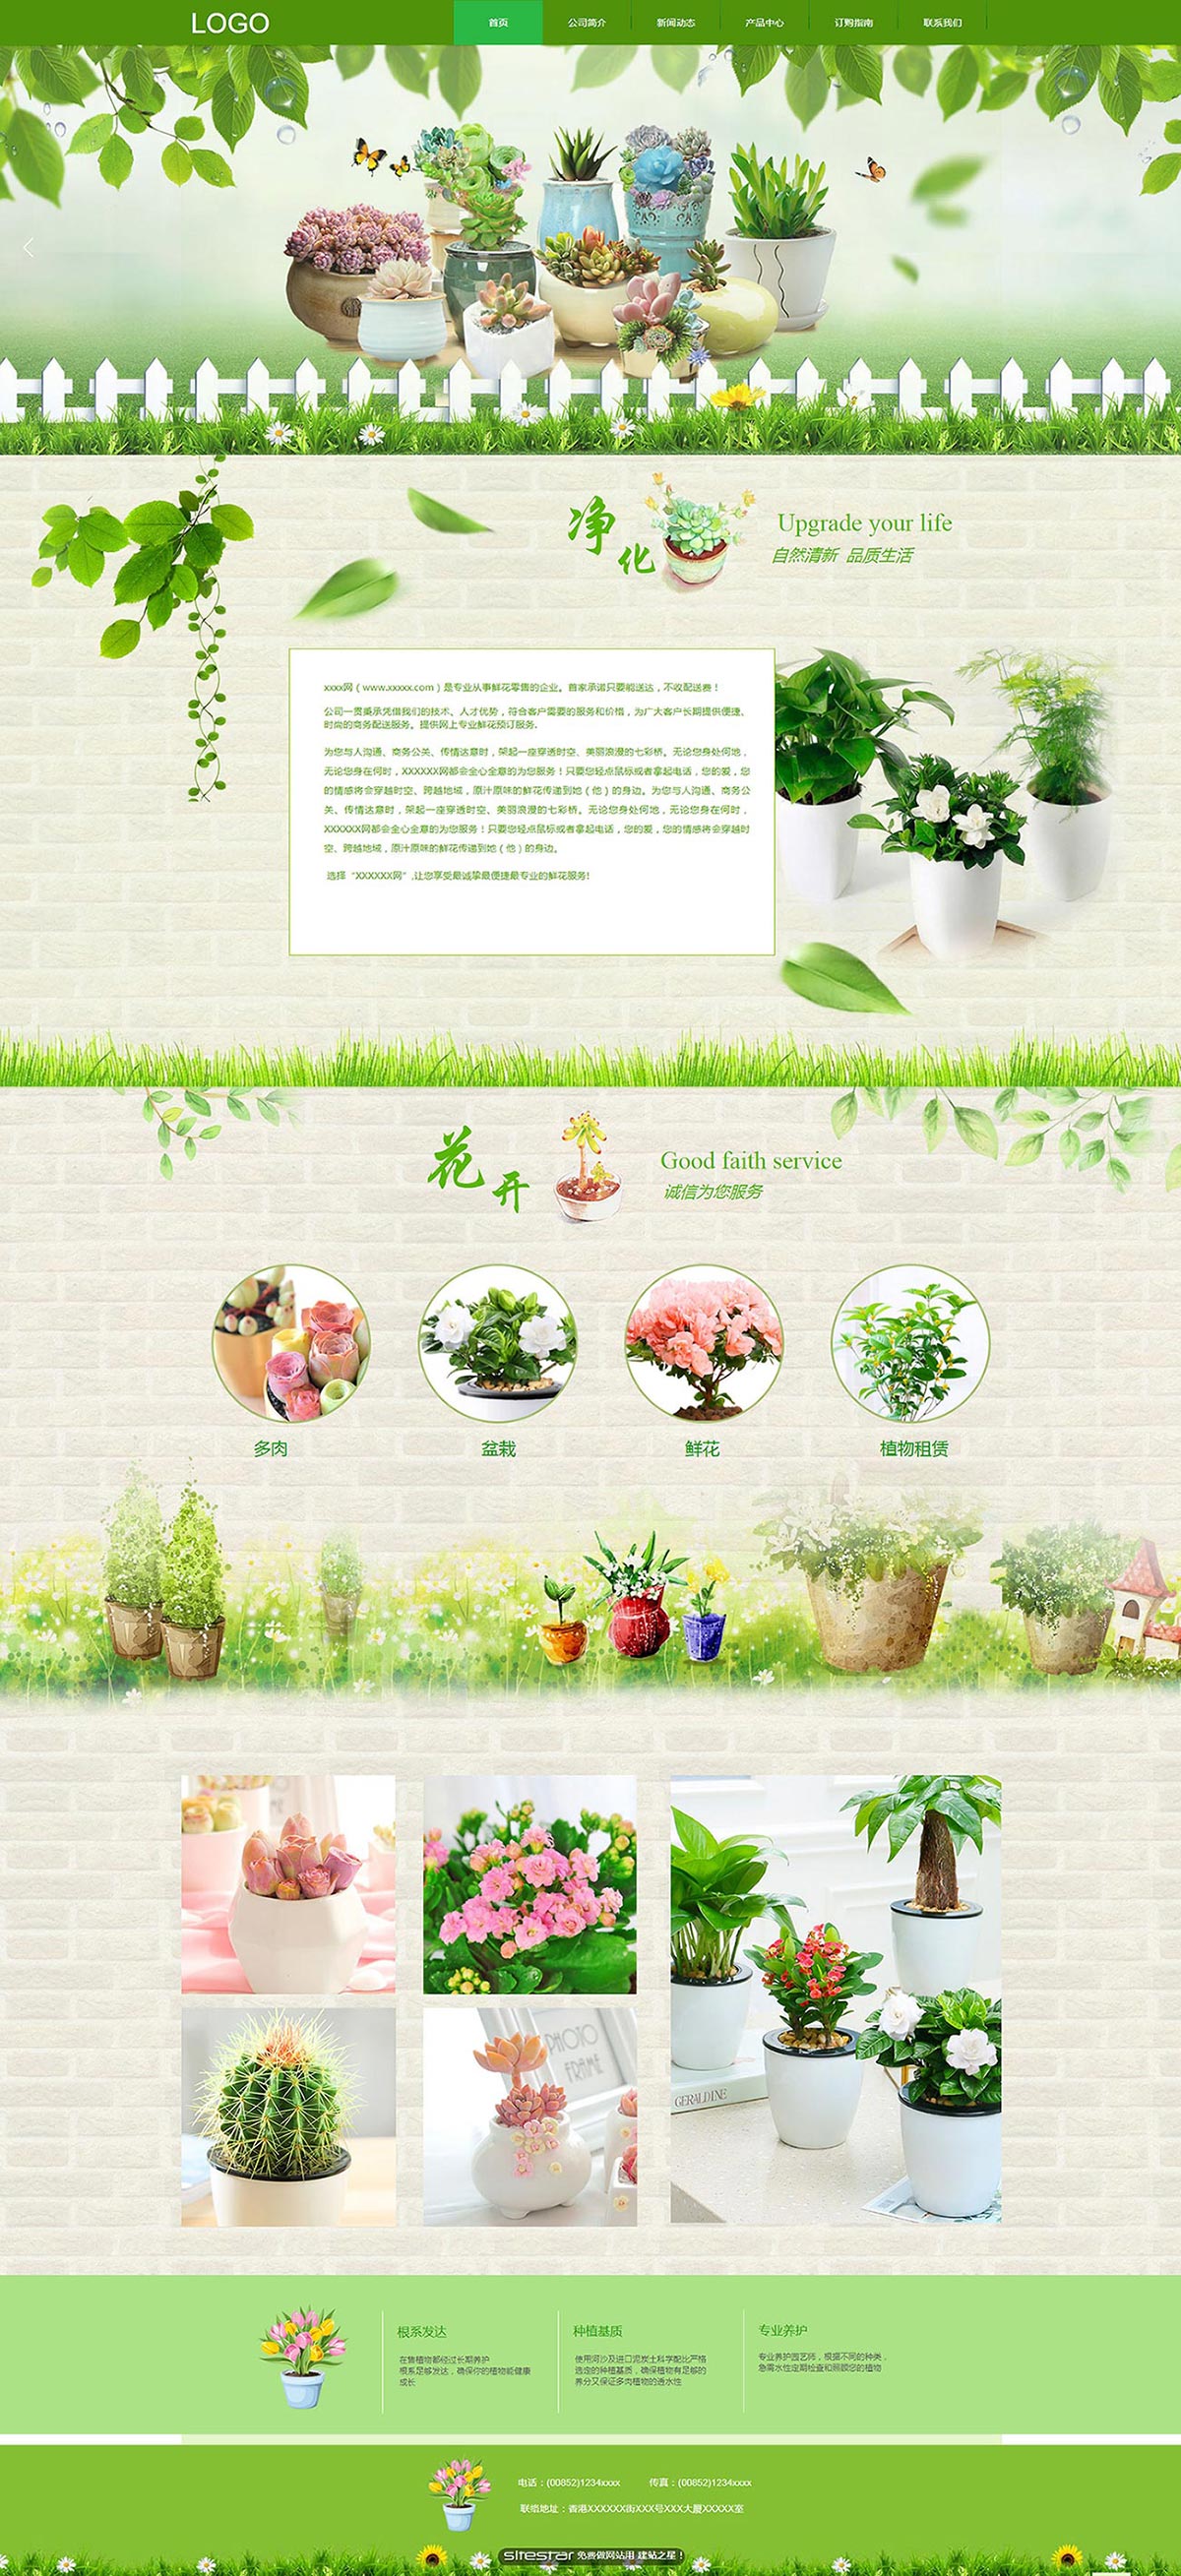 企业网站精美模板-flowers-1131381